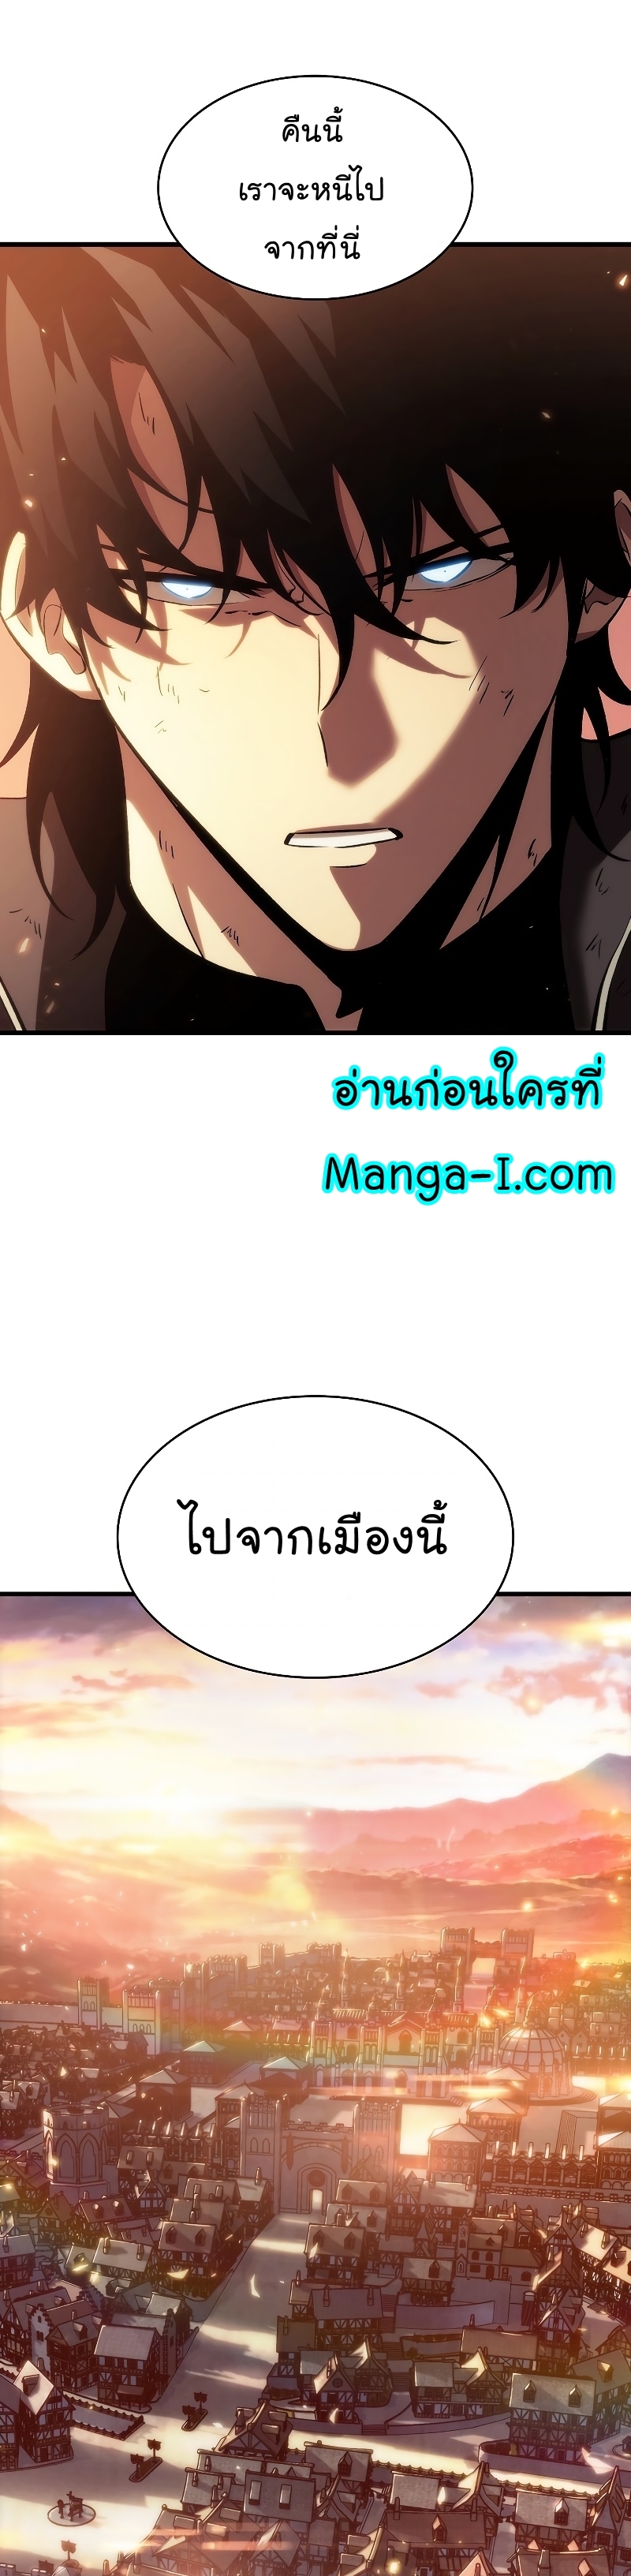 Manga I Manwha Pick Me 51 (1)